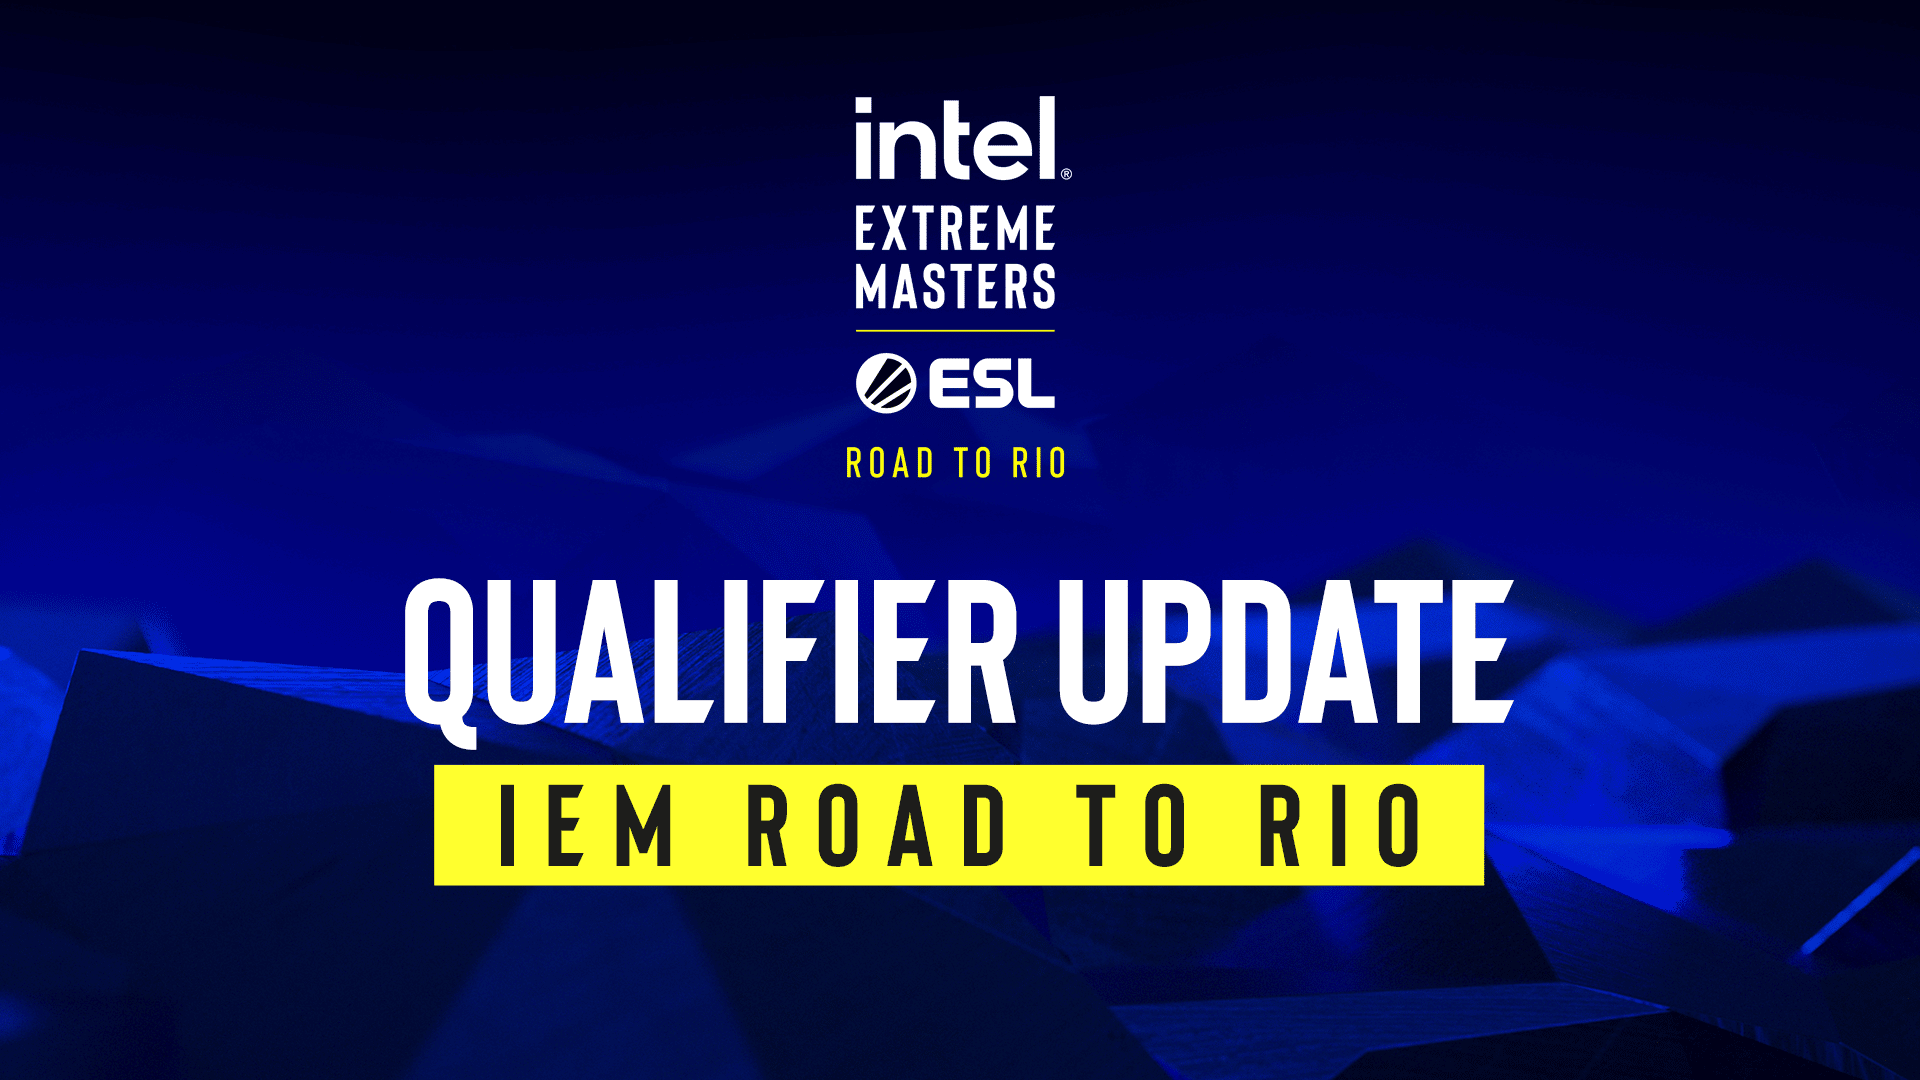 IEM Road to Rio Qualifier Update Splash Screen